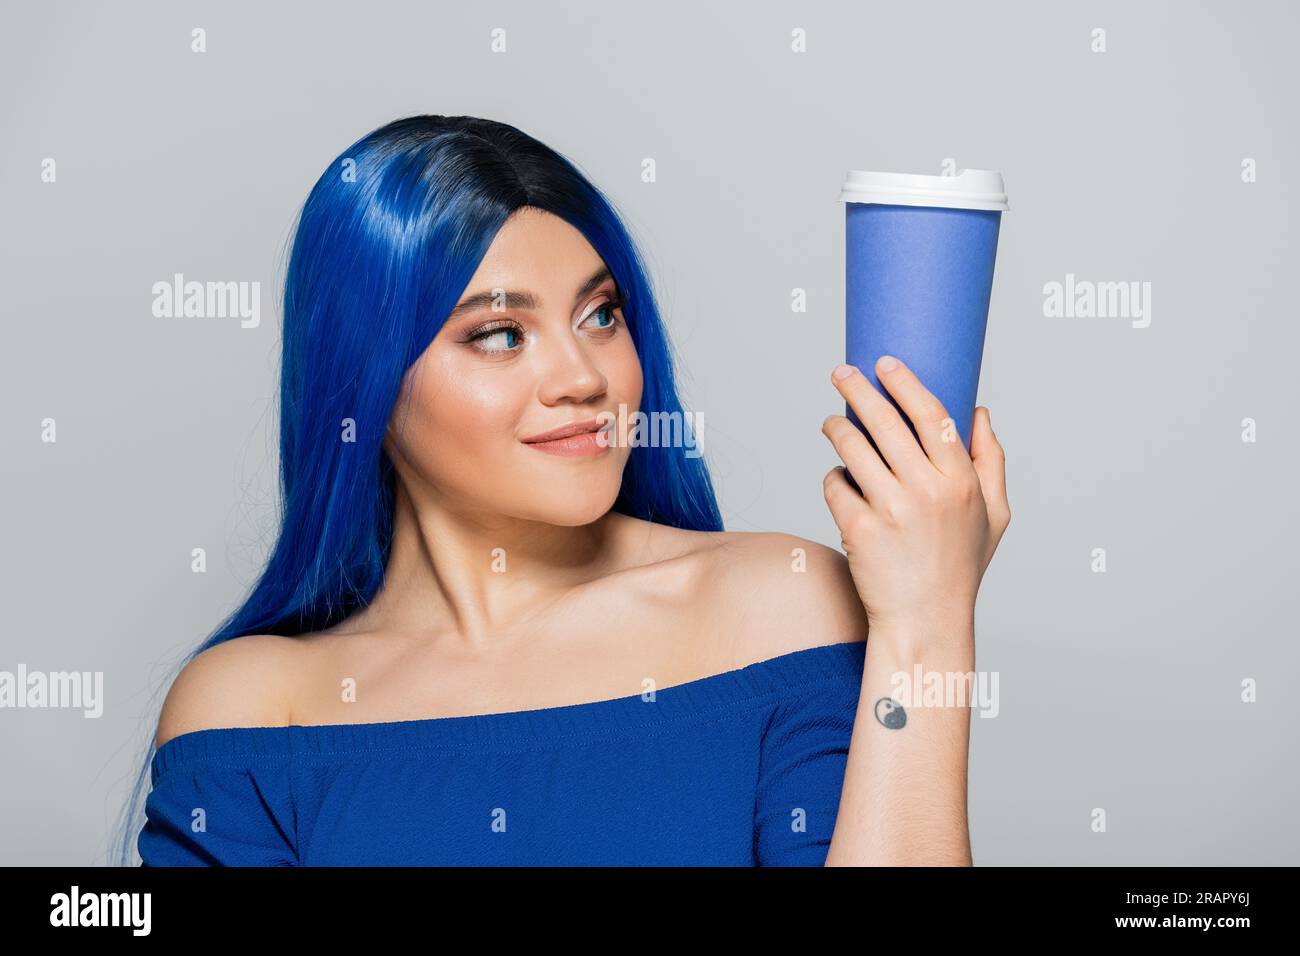 Zum Mitnehmen, junge Frau mit blauem Haar und Augen, die Kaffee auf grauem Hintergrund hält, Essen zum Mitnehmen, Koffein, Energie, Tattoo, Lebendige Farben, selbst ablaufend Stockfoto